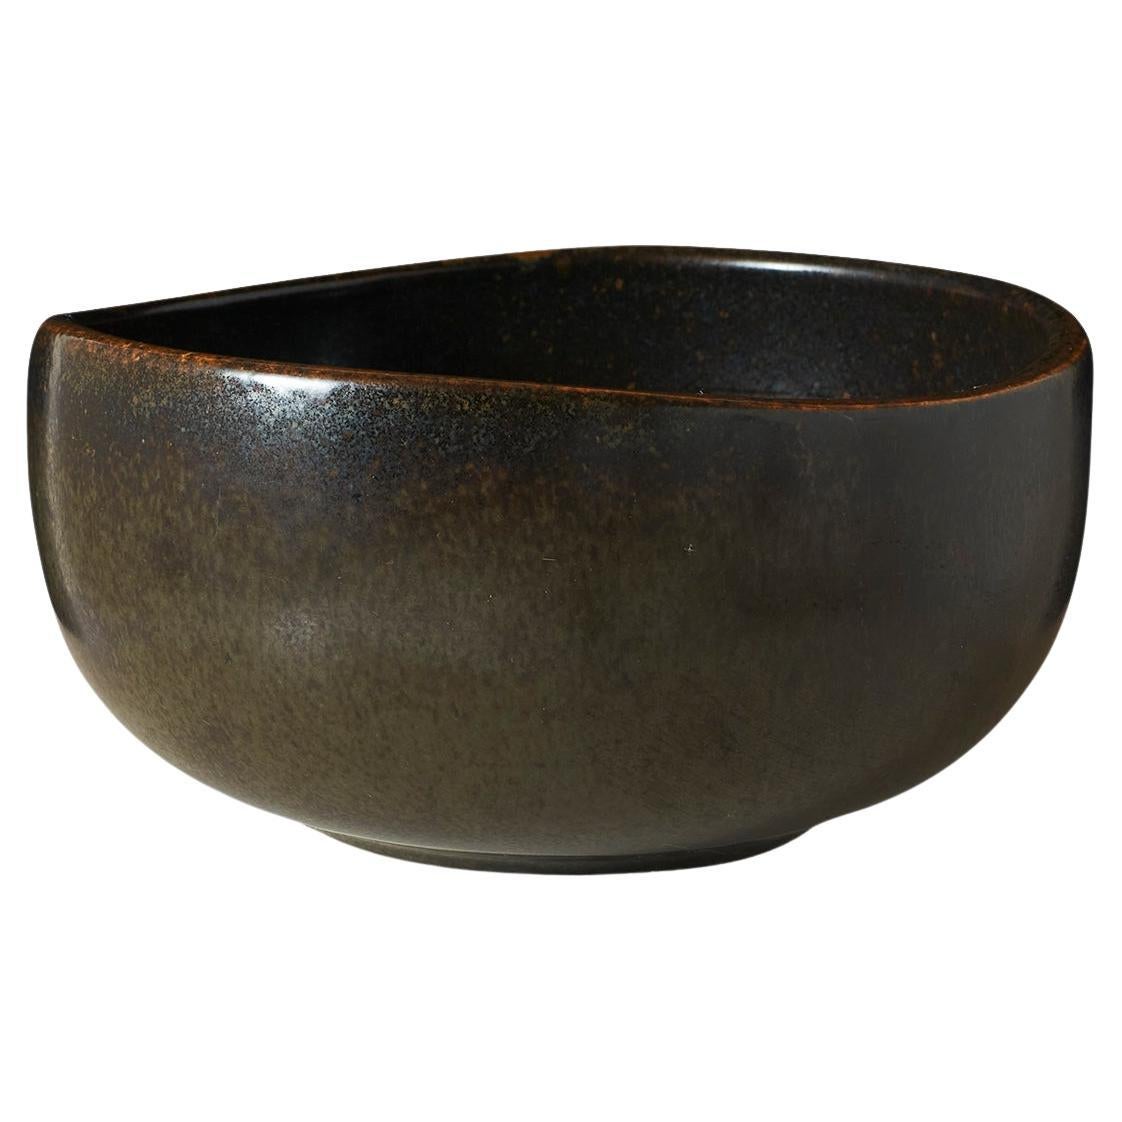 Deep Ceramic Brown Bowl by Eva Staehr-Nielsen